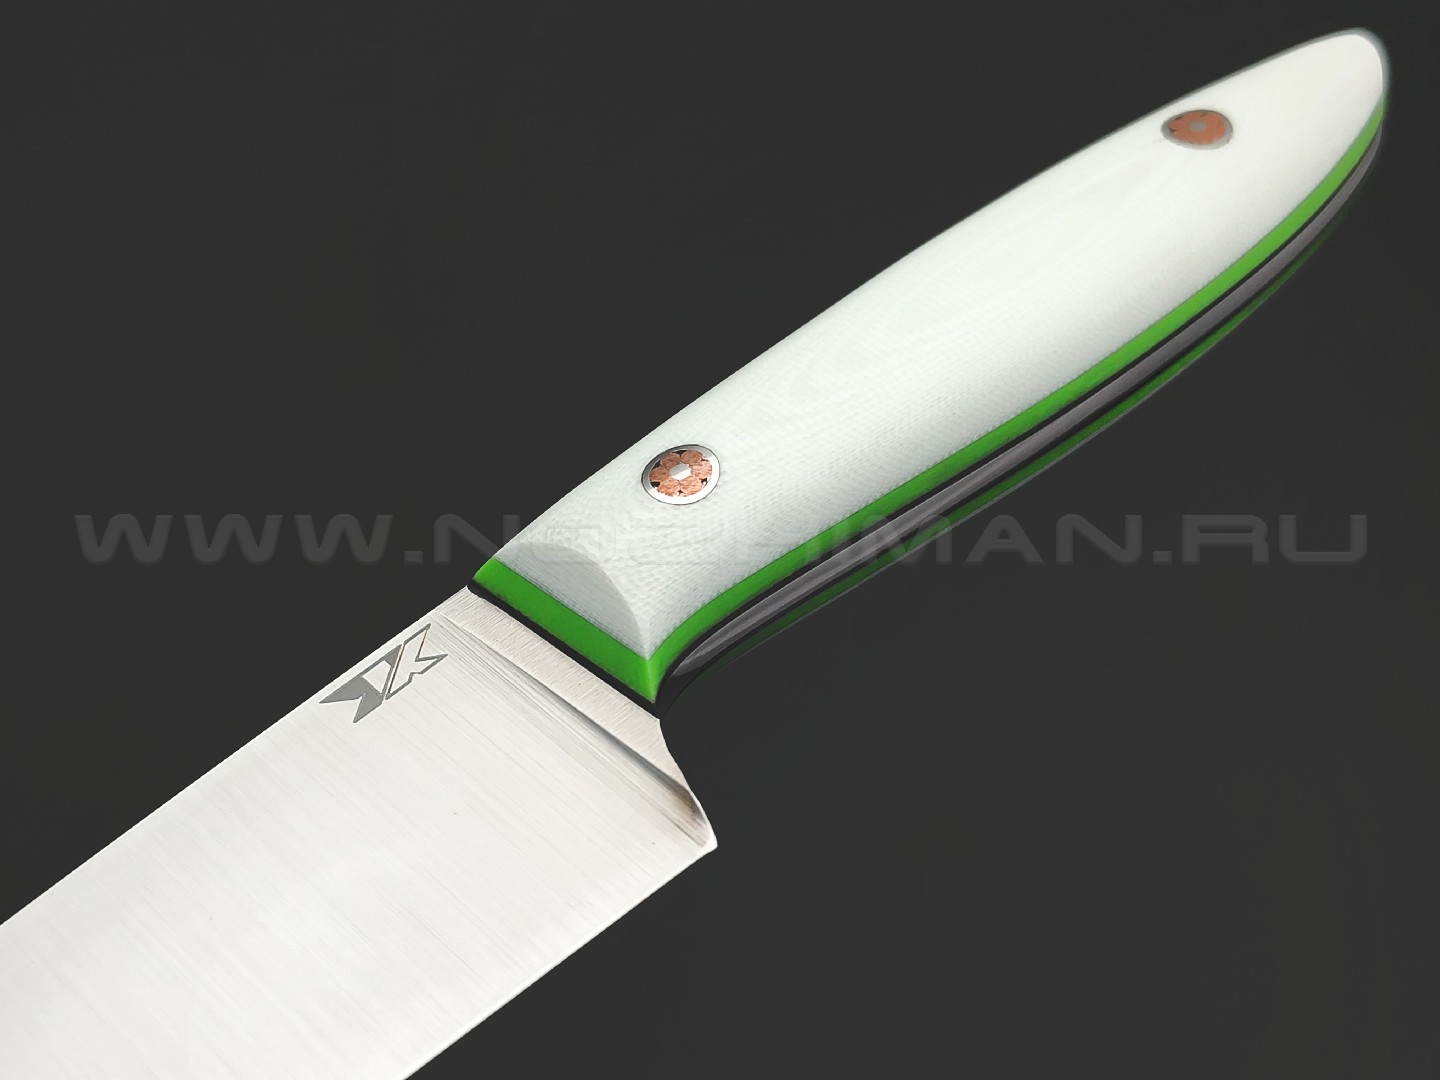 7 ножей нож Су-шеф сталь N690 satin, рукоять G10 white & green